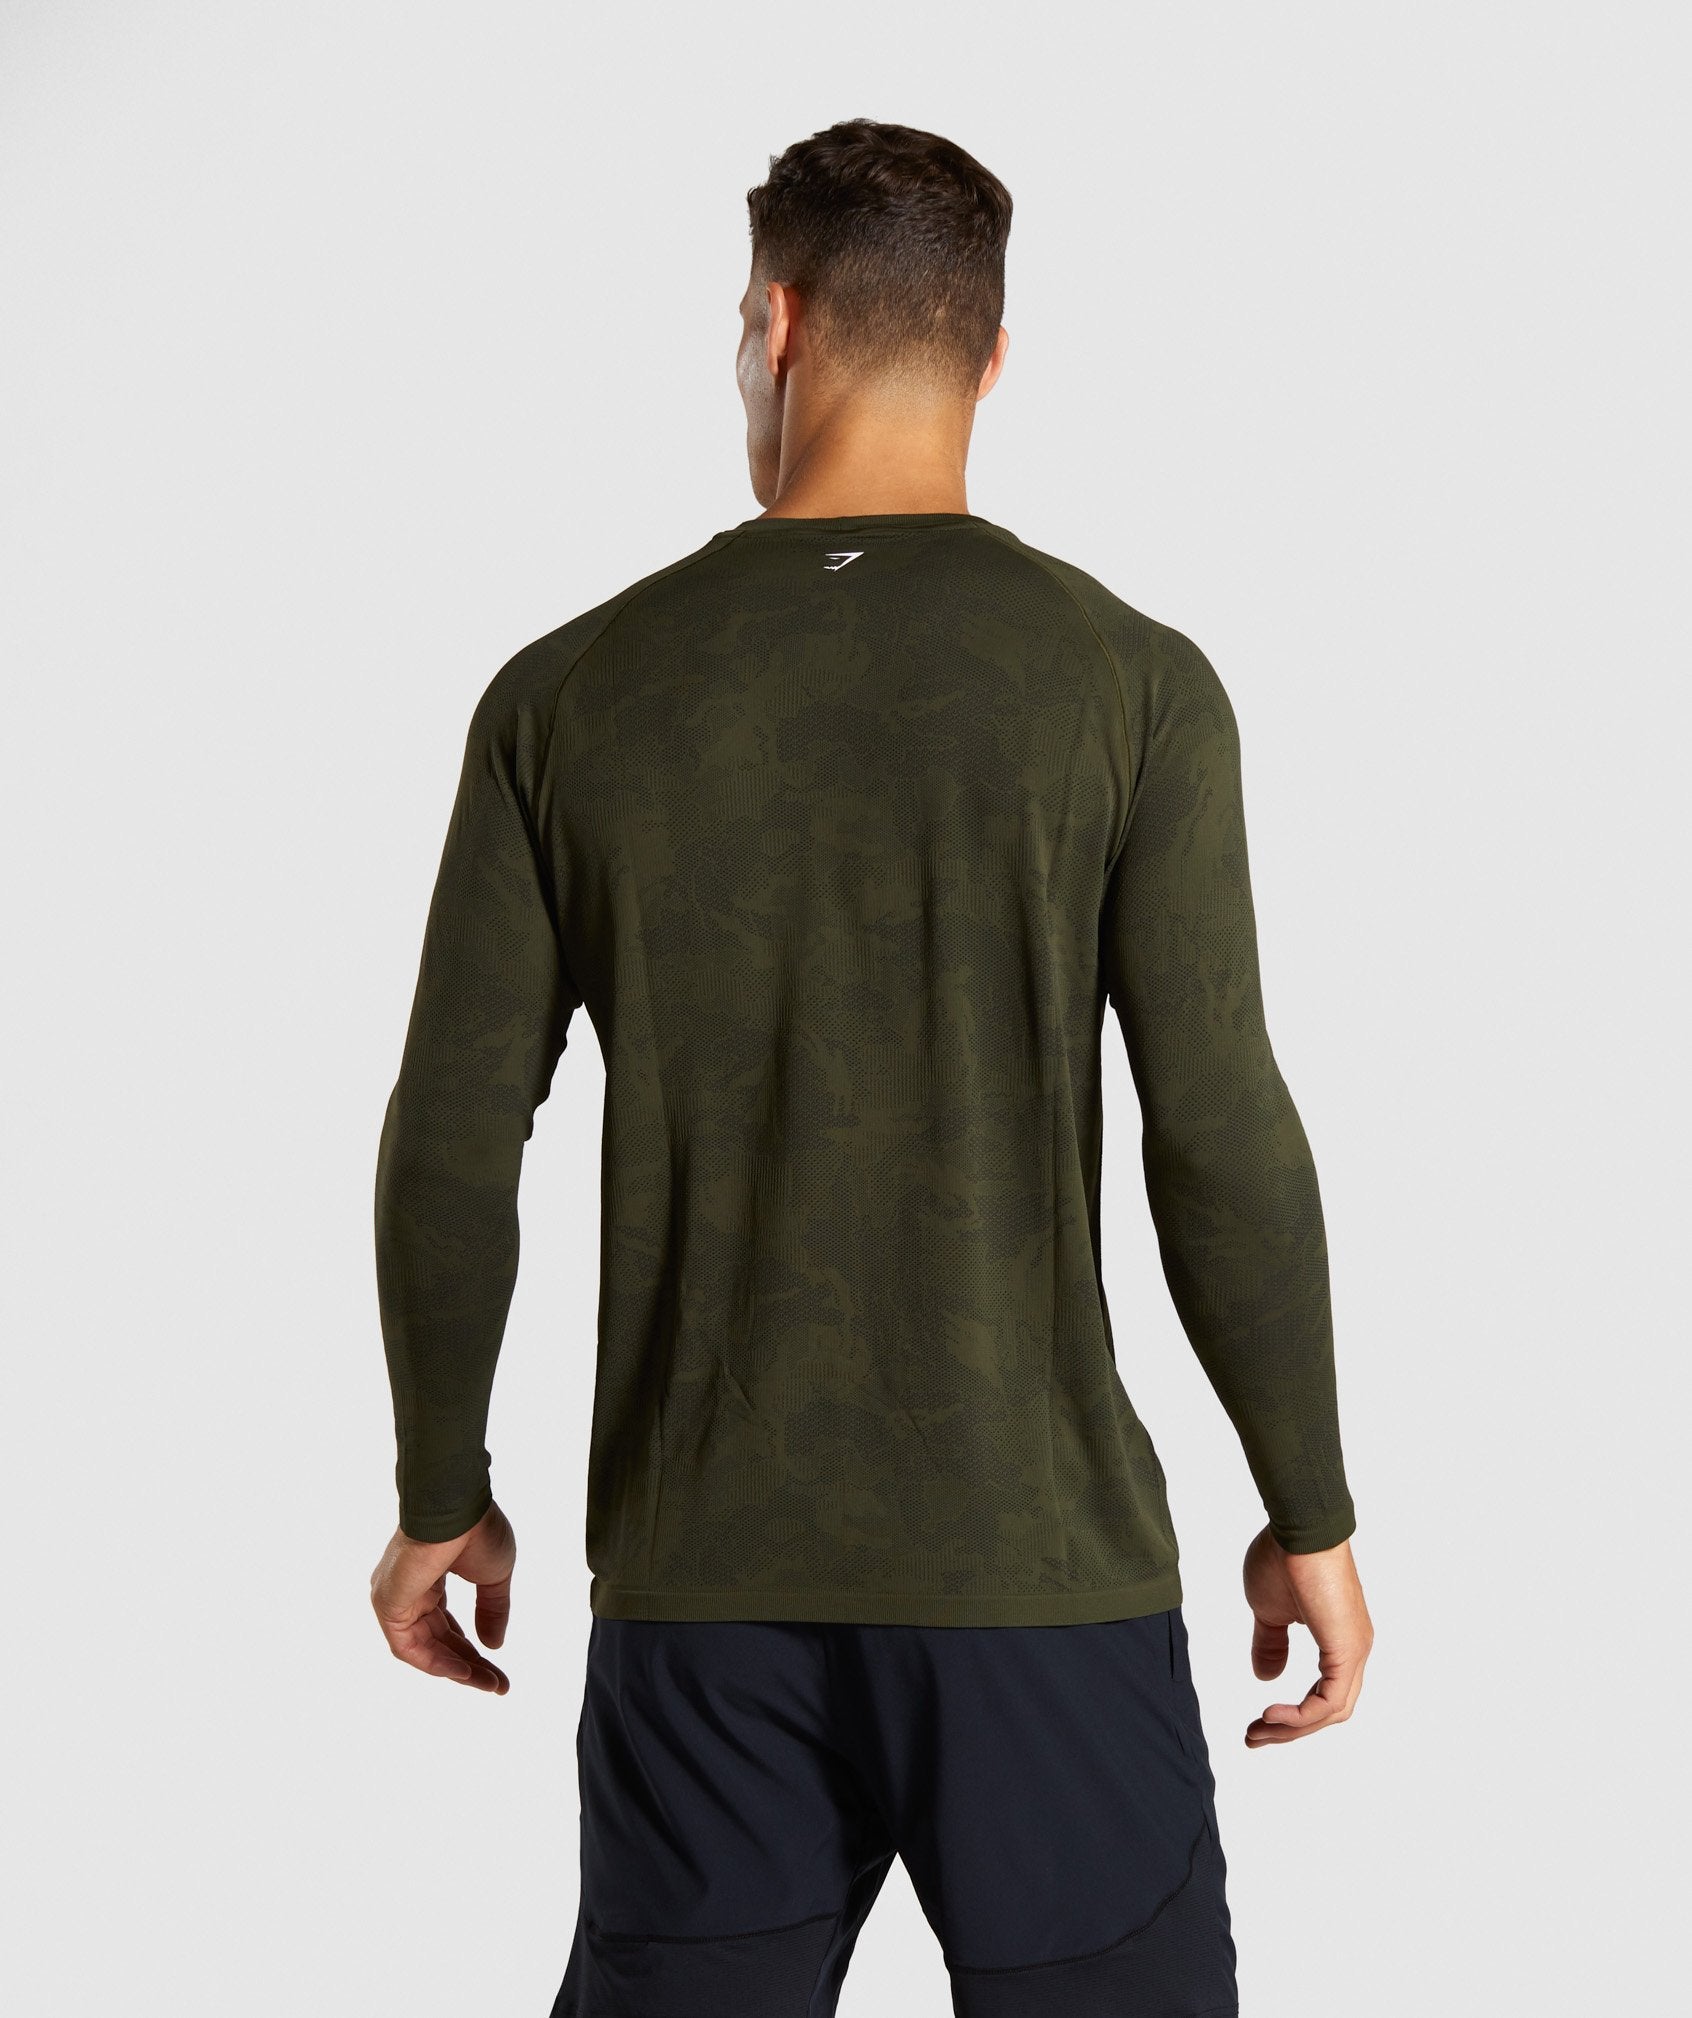 Geo Lightweight Seamless Long Sleeve T-Shirt in Dark Green